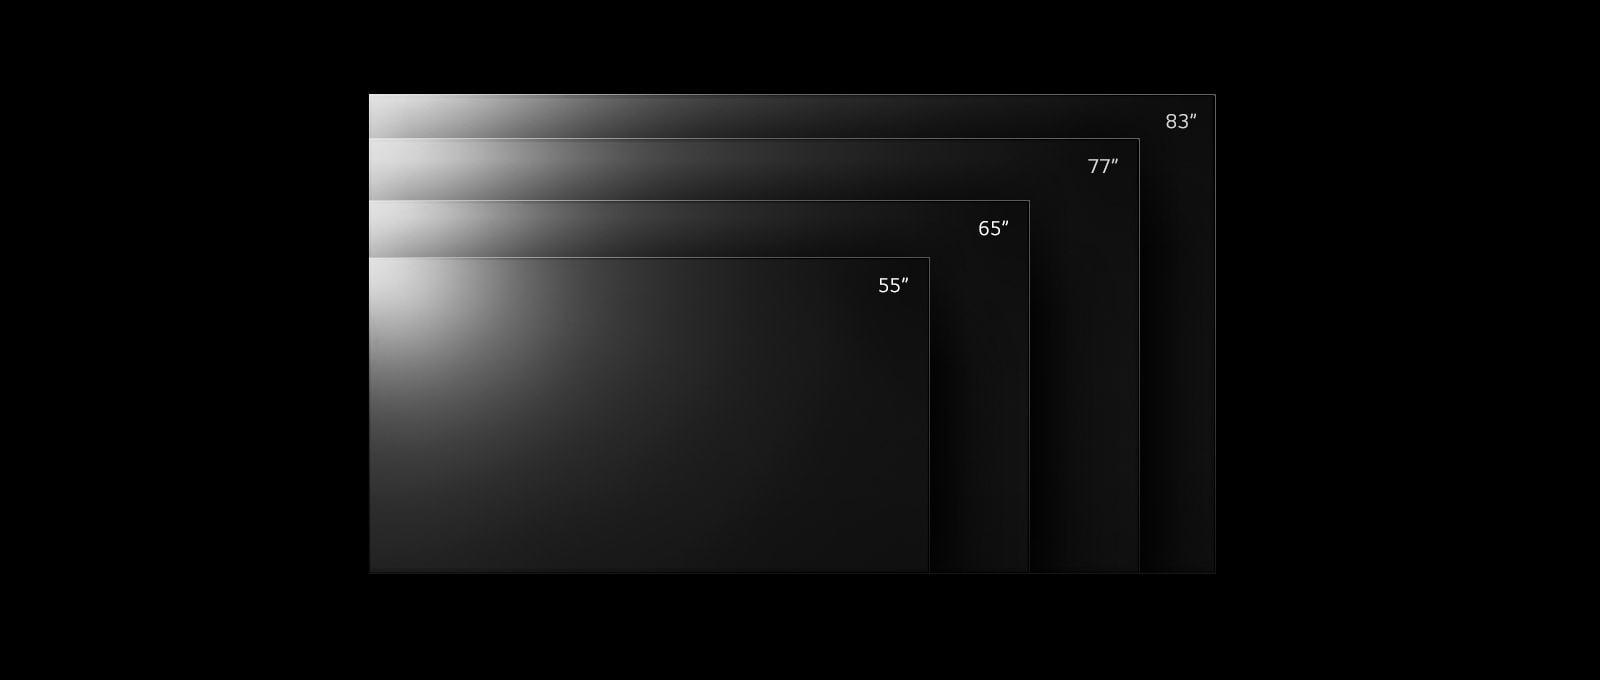 Paleta televizorjev LG OLED G2 v različnih velikostih od 55 do 83 palcev